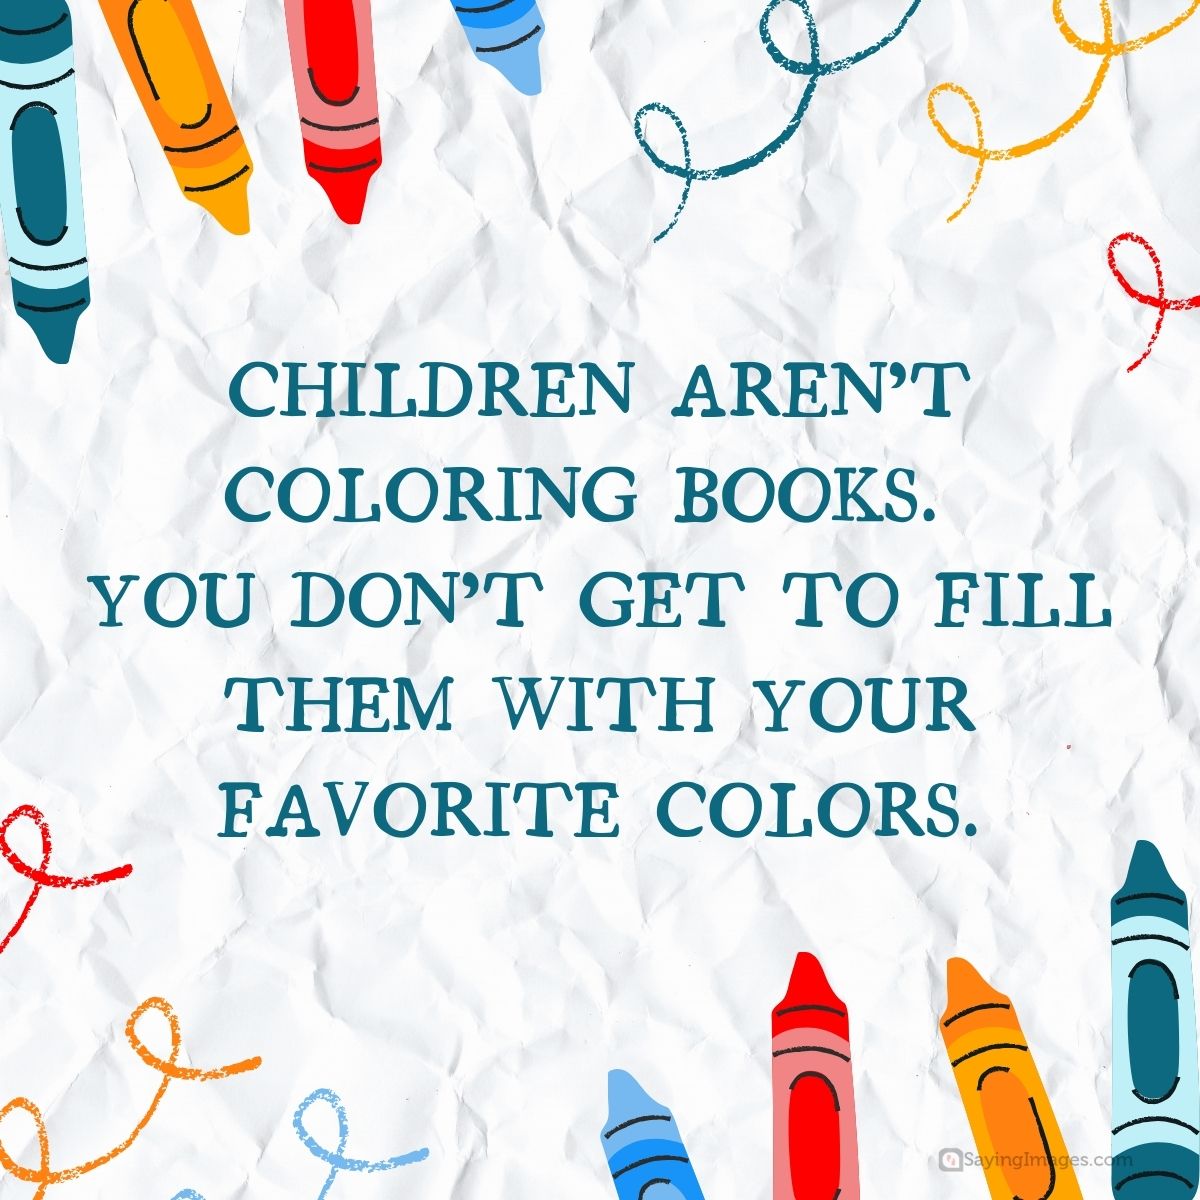 Children aren't coloring books